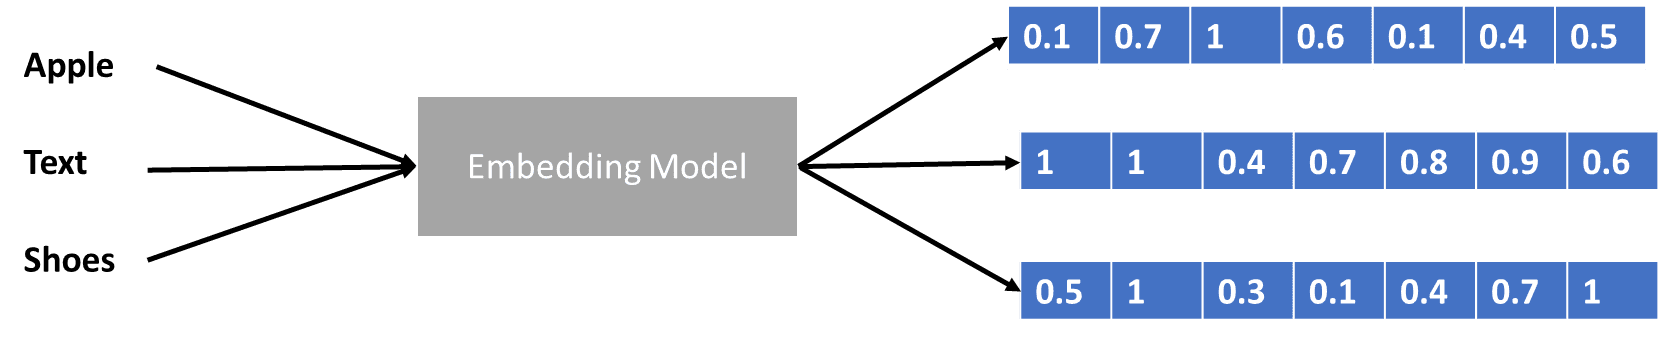 Grote taalmodellen uitgelegd in 3 moeilijkheidsgraden